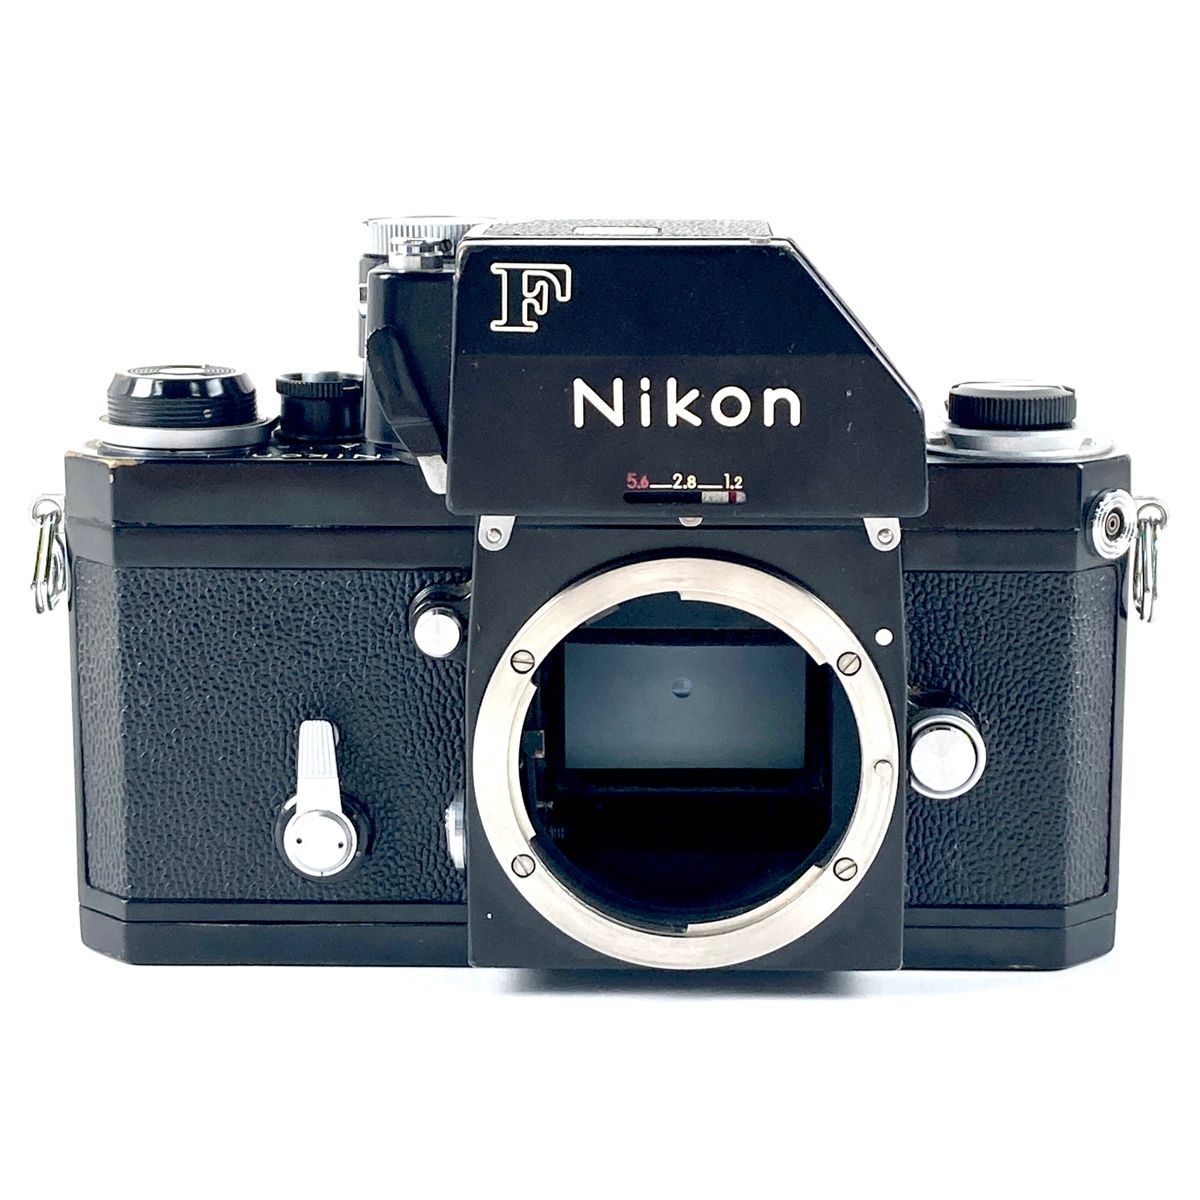 ニコン Nikon F フォトミック ボディ ブラック フィルム マニュアルフォーカス 一眼レフカメラ 【中古】 - メルカリ